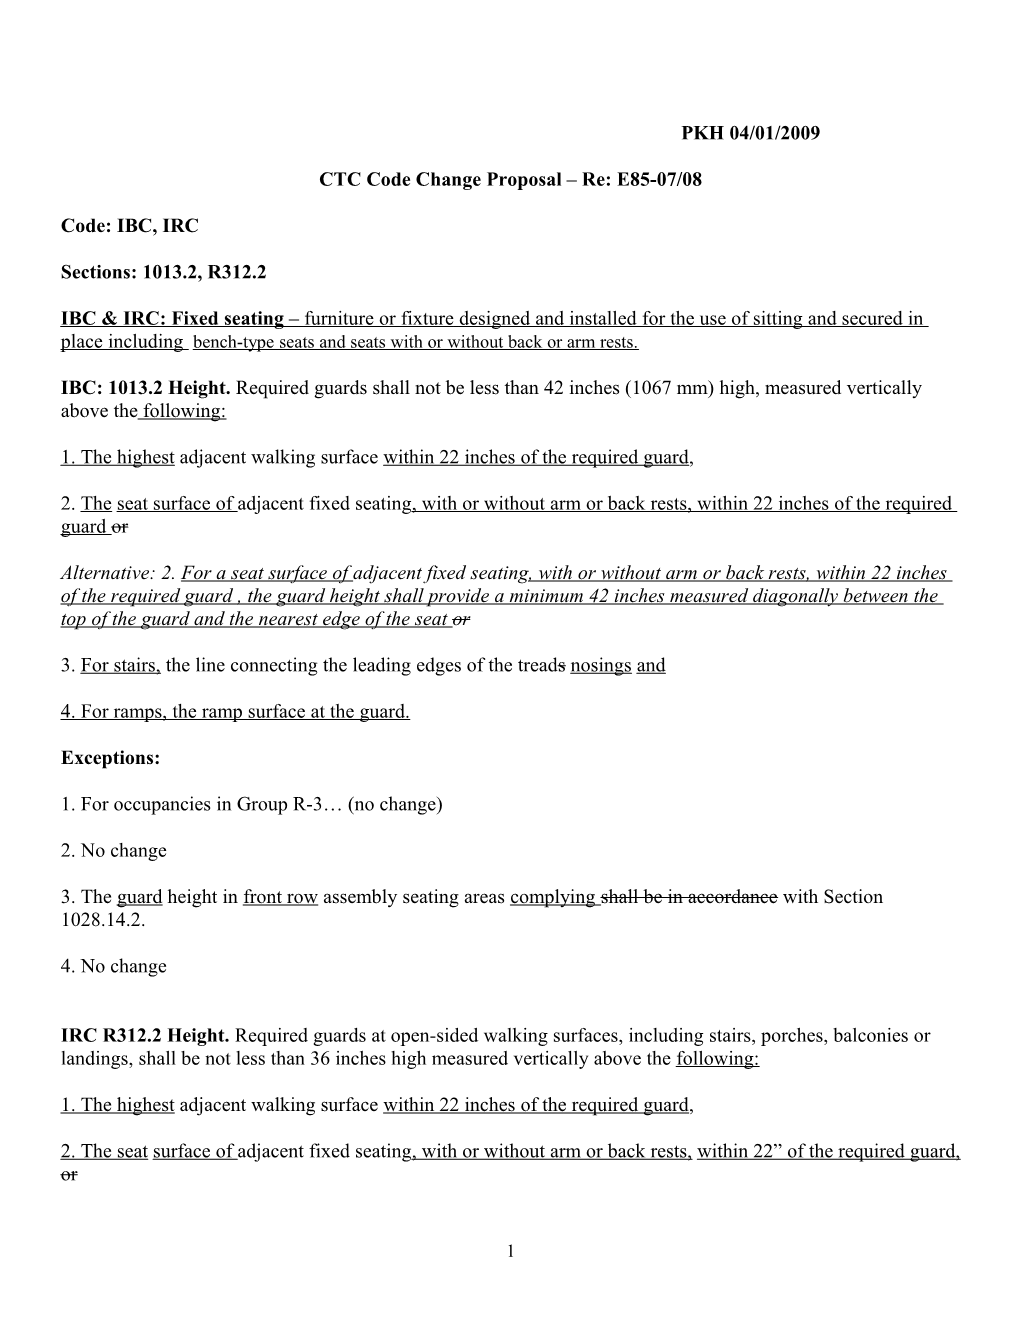 2009/2010 Guard Seatboard Draft Proposal